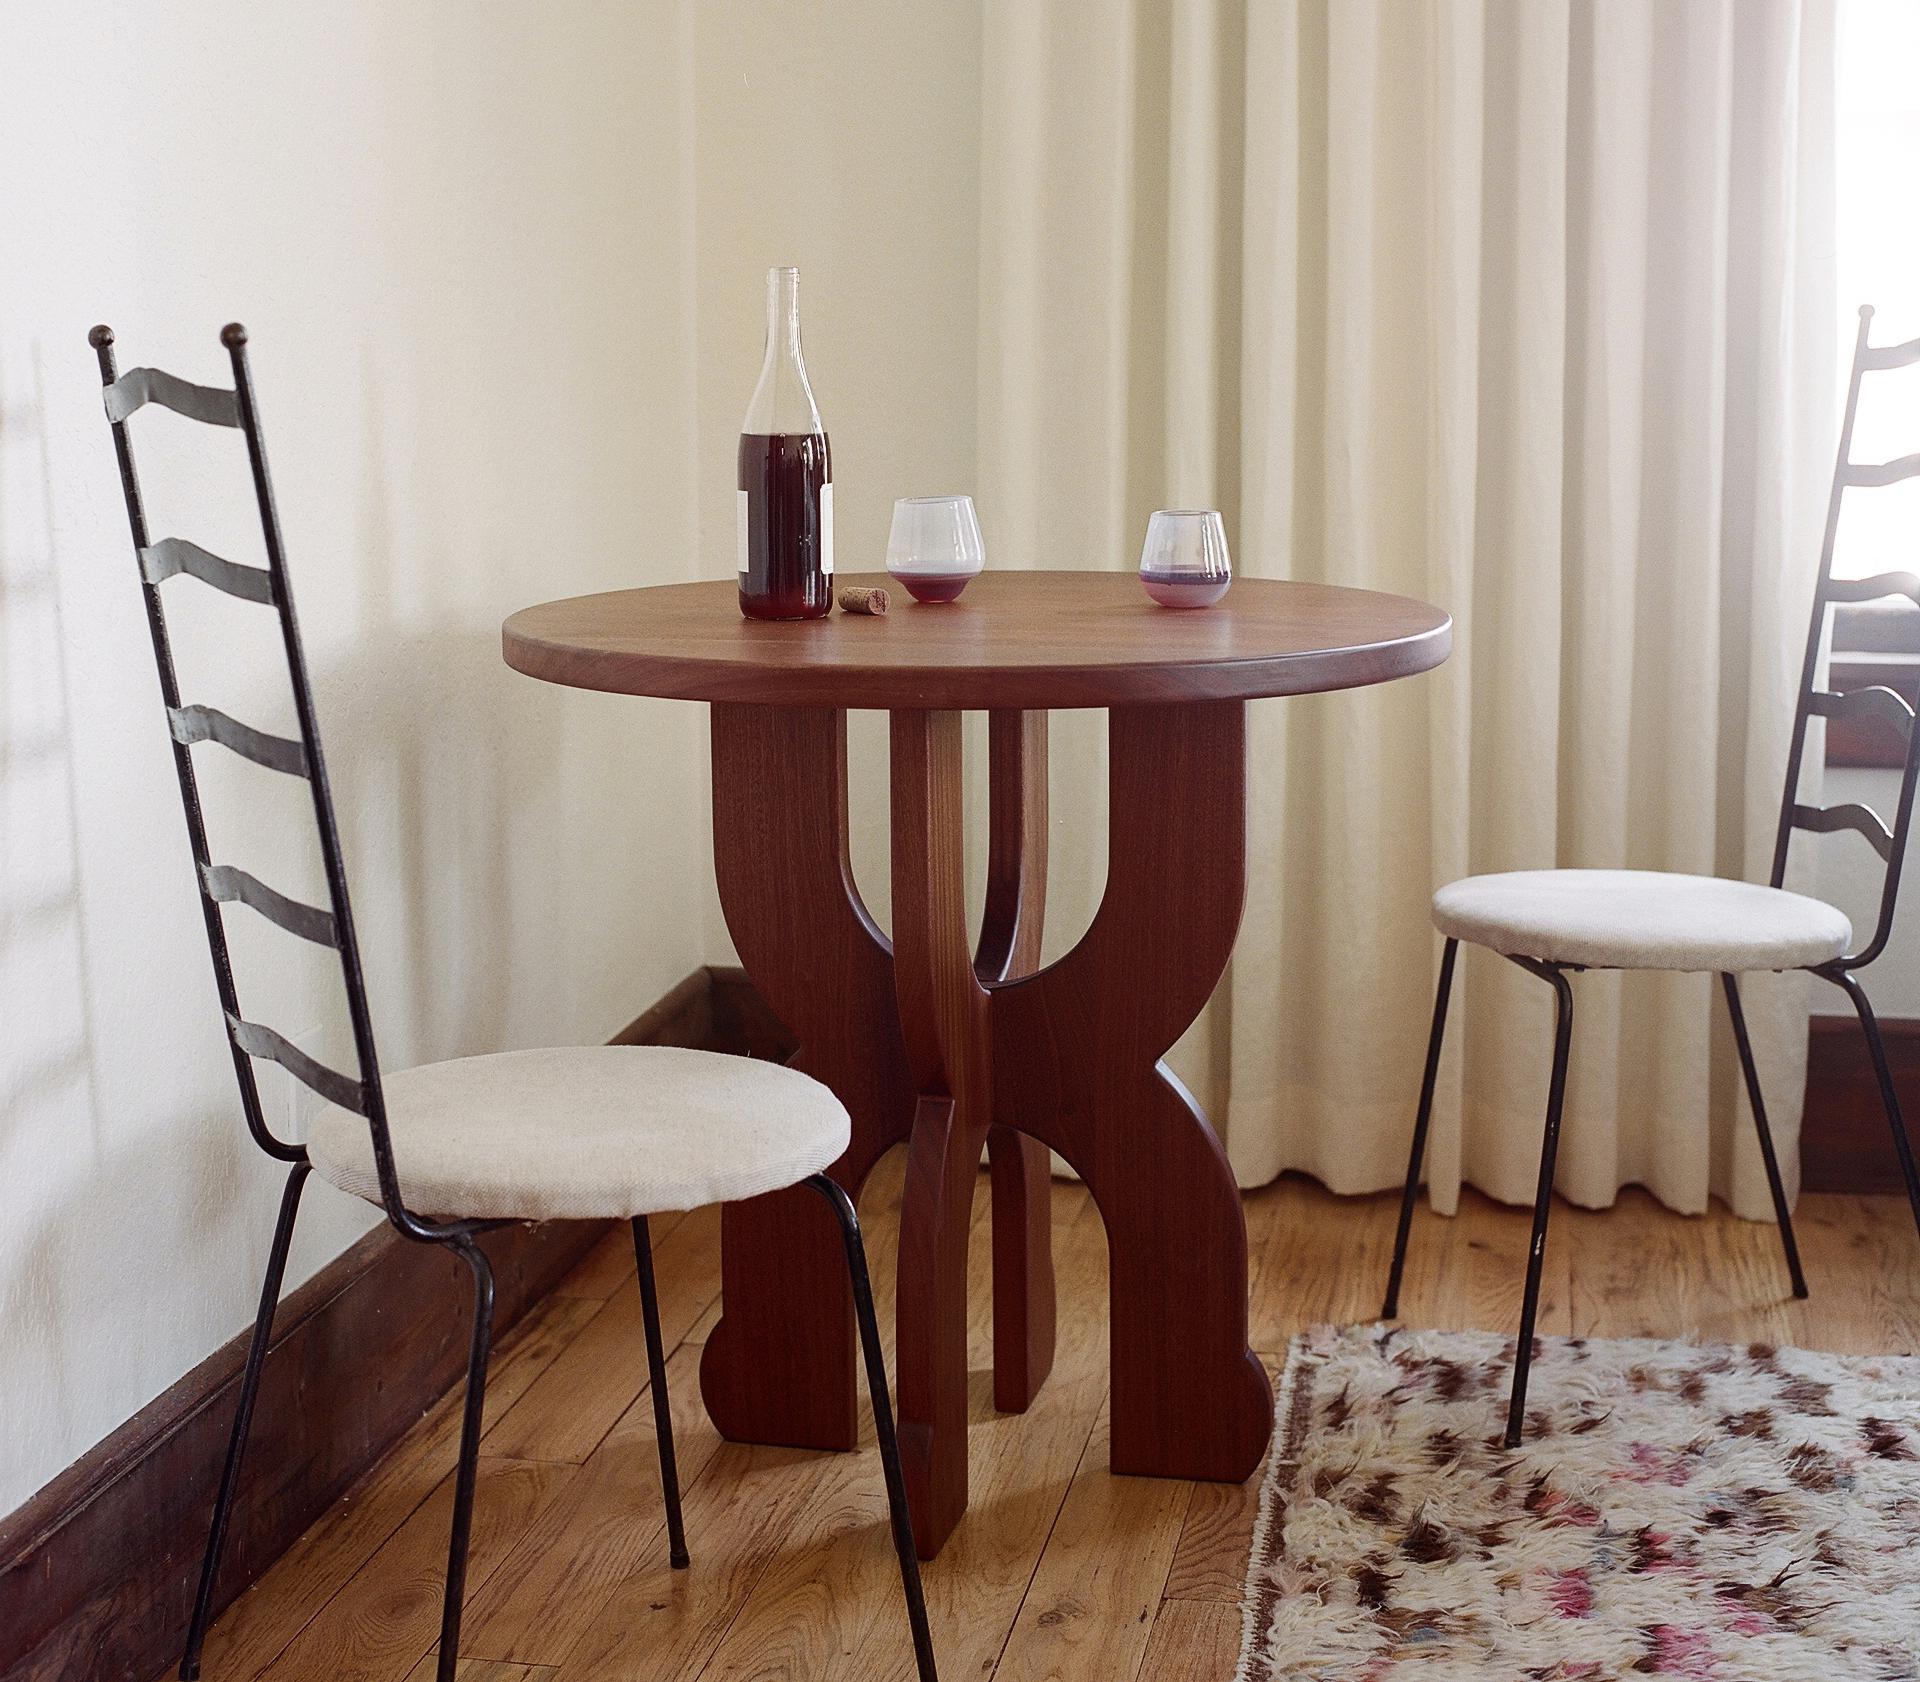 Der Table Wine Table zeichnet sich durch weiche Kurven und eine verspielte Silhouette aus. Er ist klein und vielseitig und kann als Eingangstisch, als übergroßer Beistelltisch für das Sofa oder als kleiner Tisch für eine Frühstücksecke verwendet